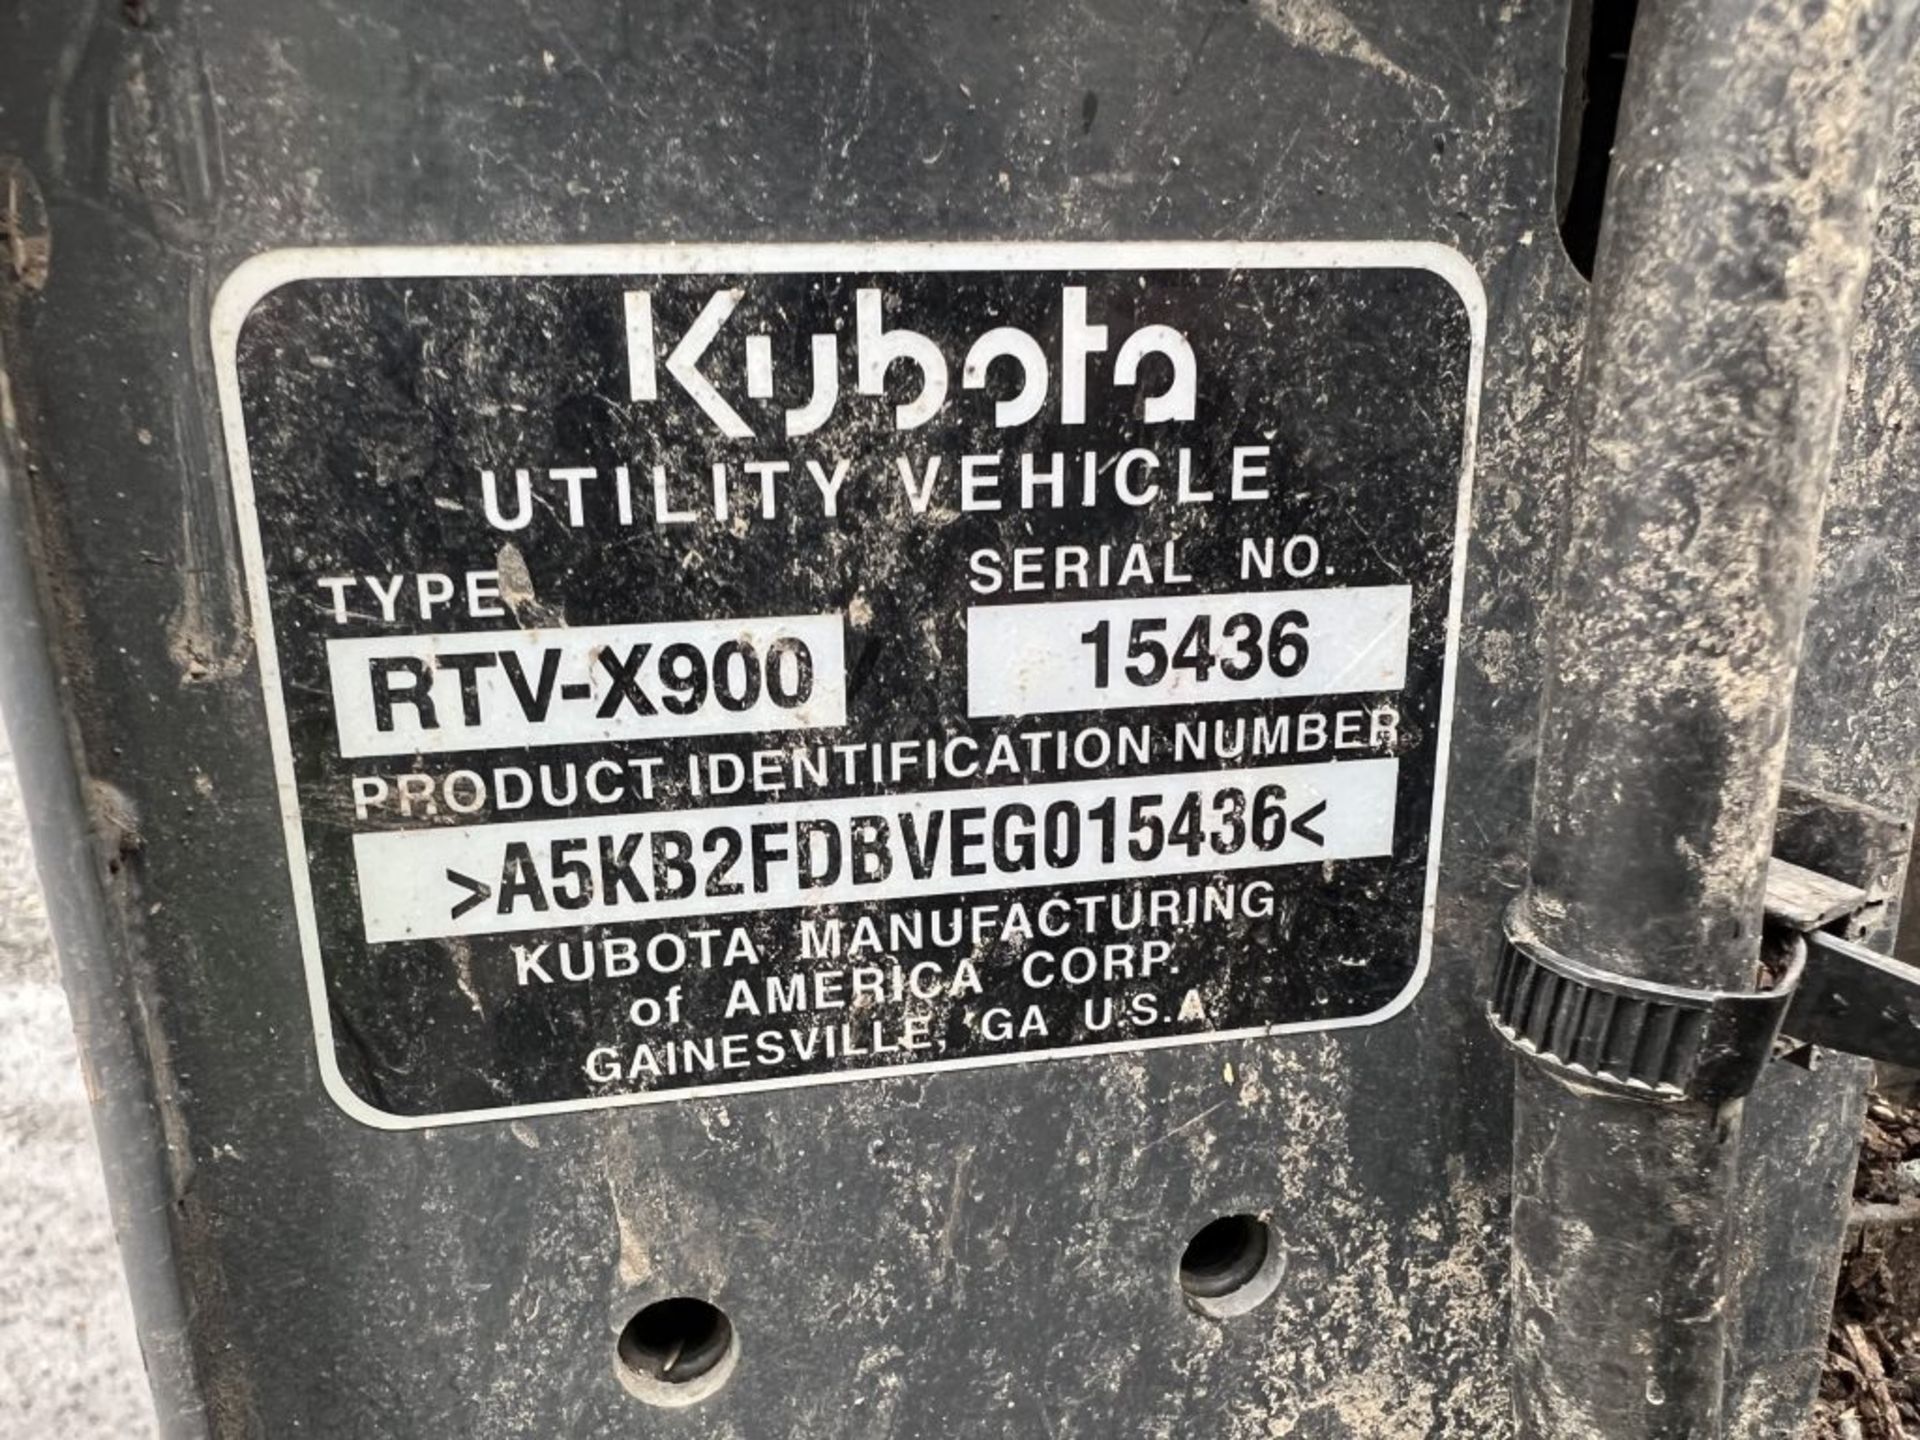 2014 Kubota RTVX900 4x4 Utility Cart - Image 15 of 31